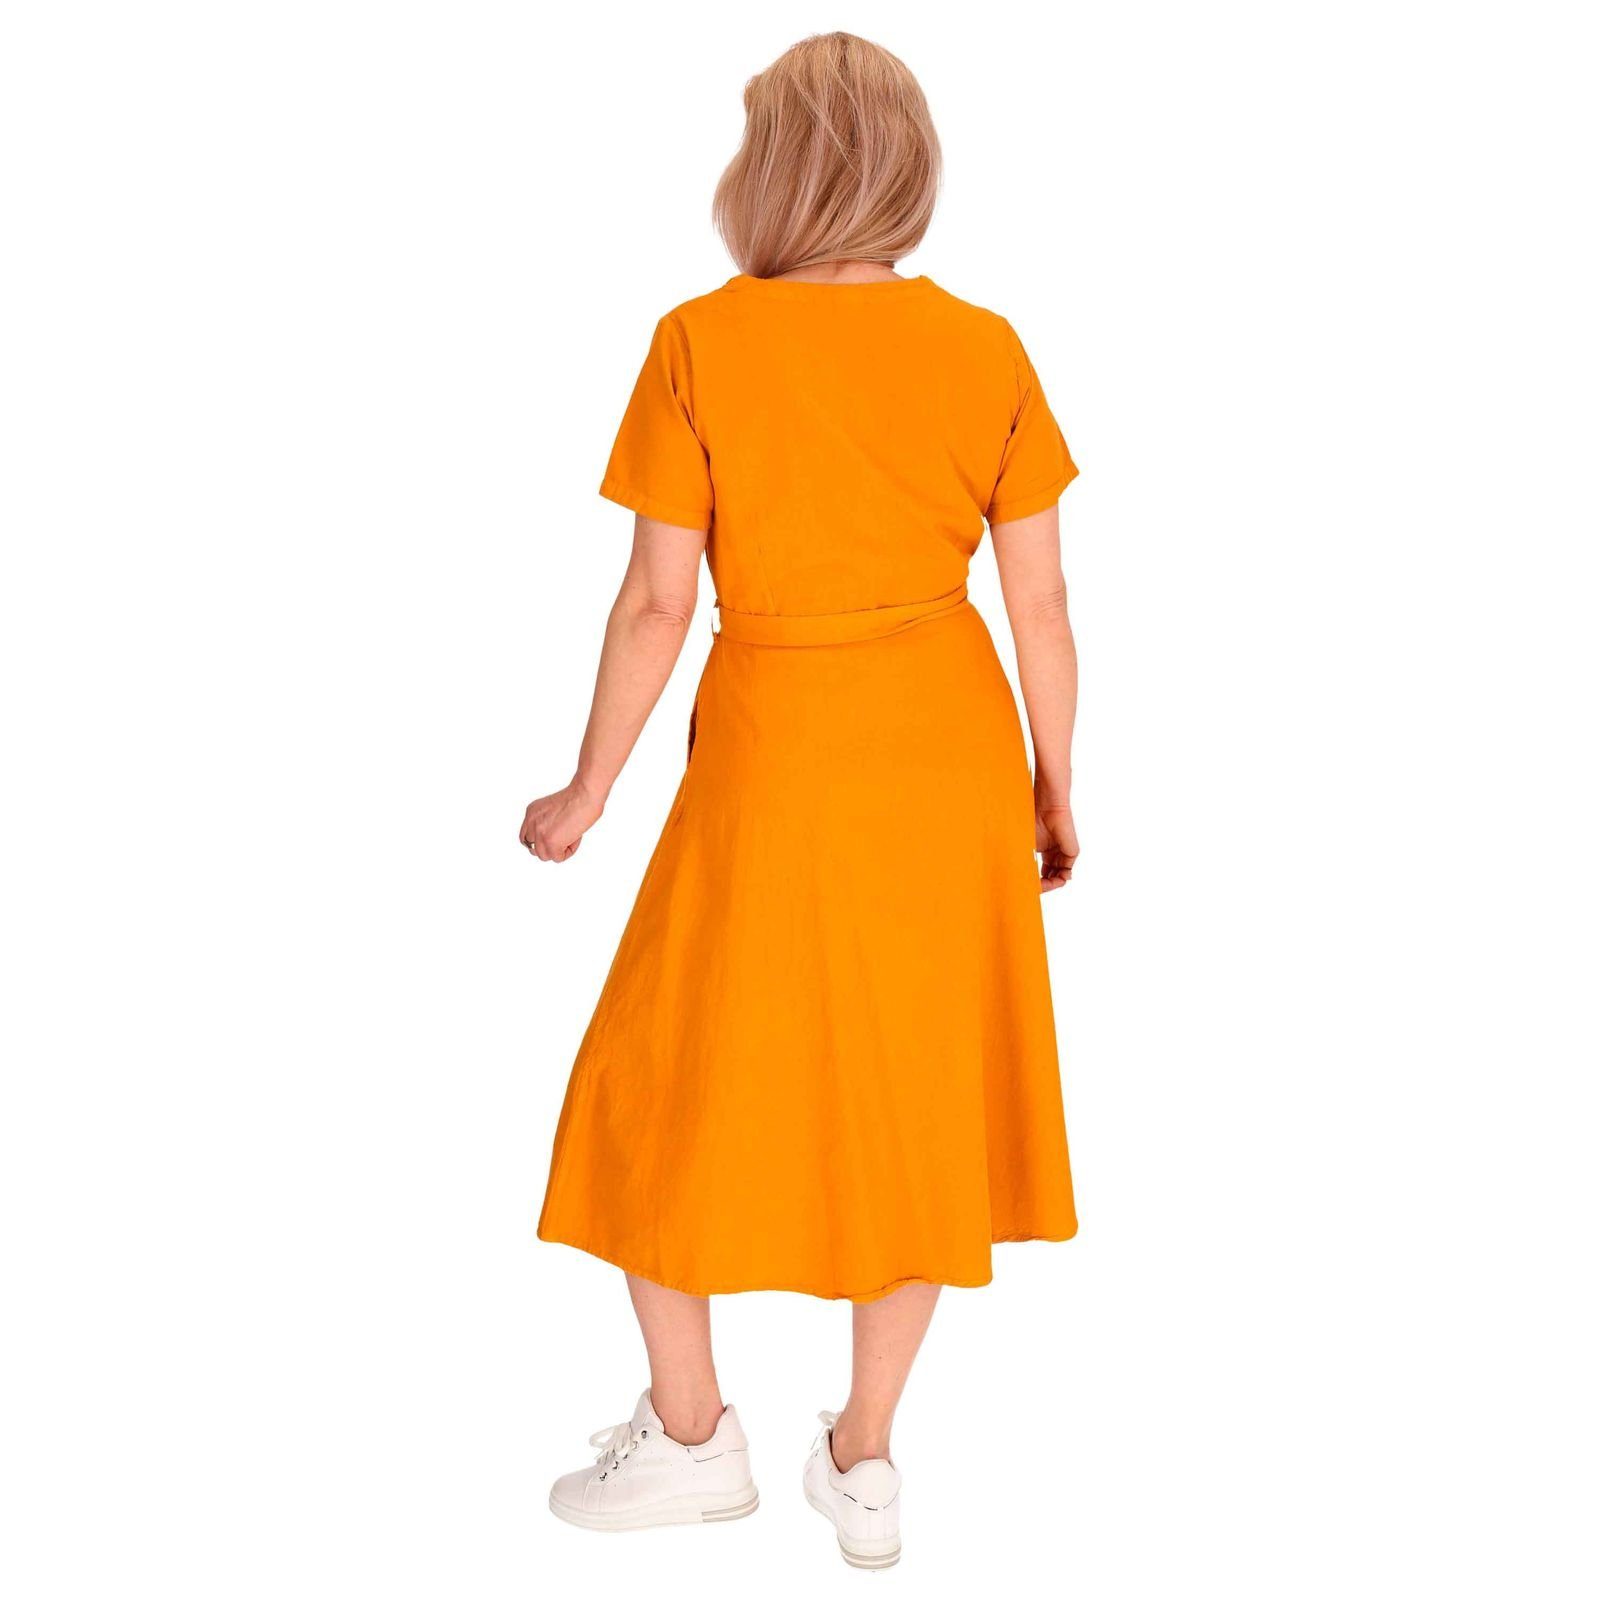 Boho Sommerkleid Geköpft Ibiza KUNST Orange Latzhose MAGIE Hippie Kleid UND Kleid Baumwoll